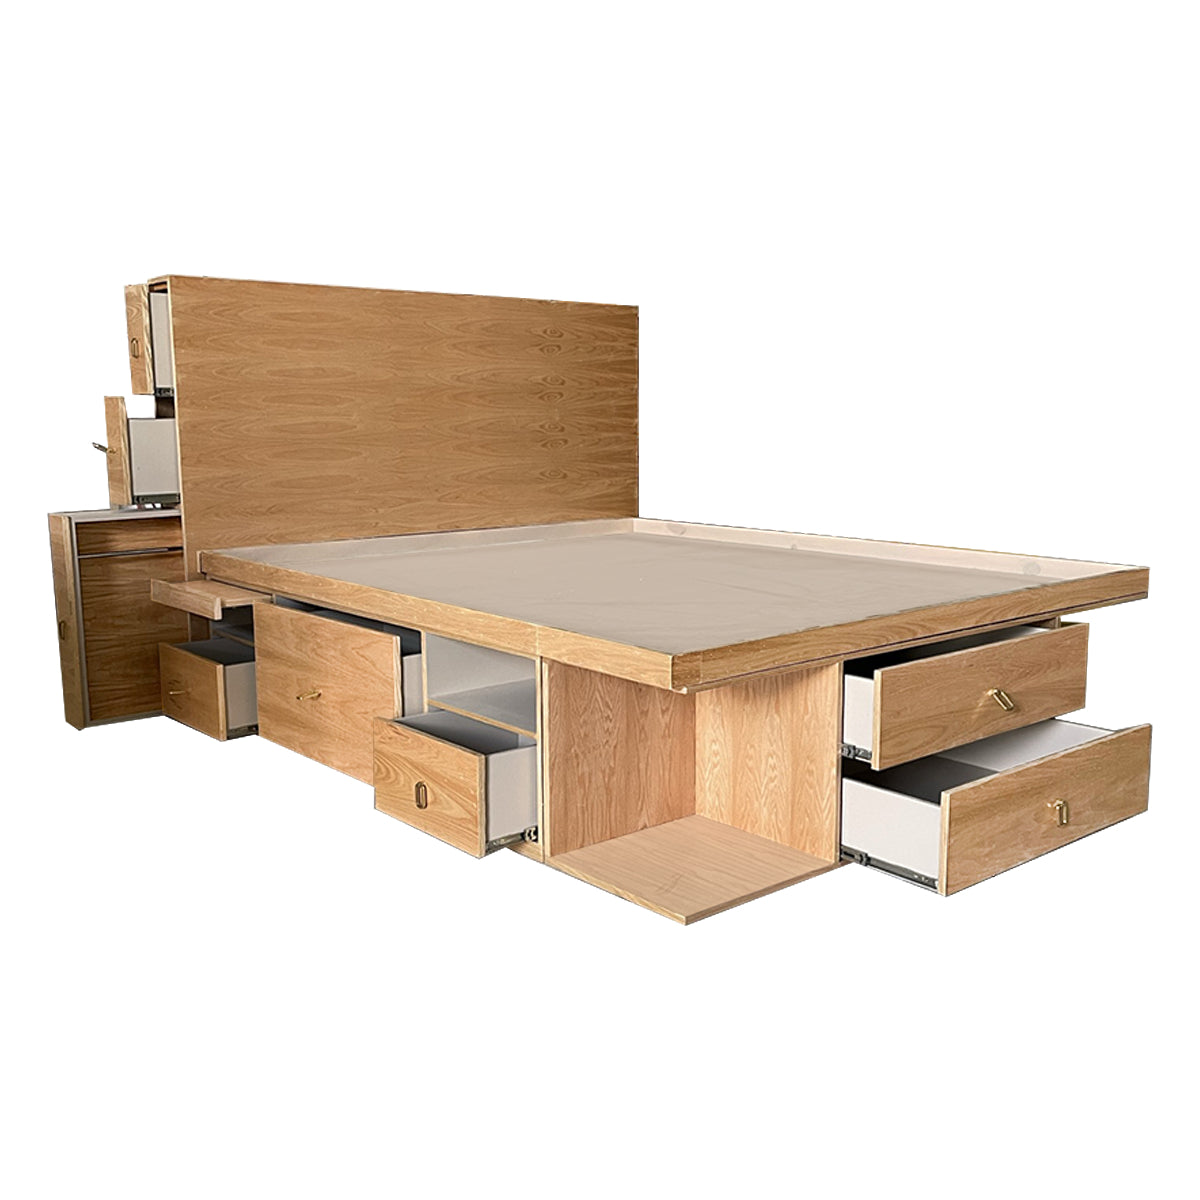 Base de cama con cajones. Calidad en muebles - Wooden Box Mx